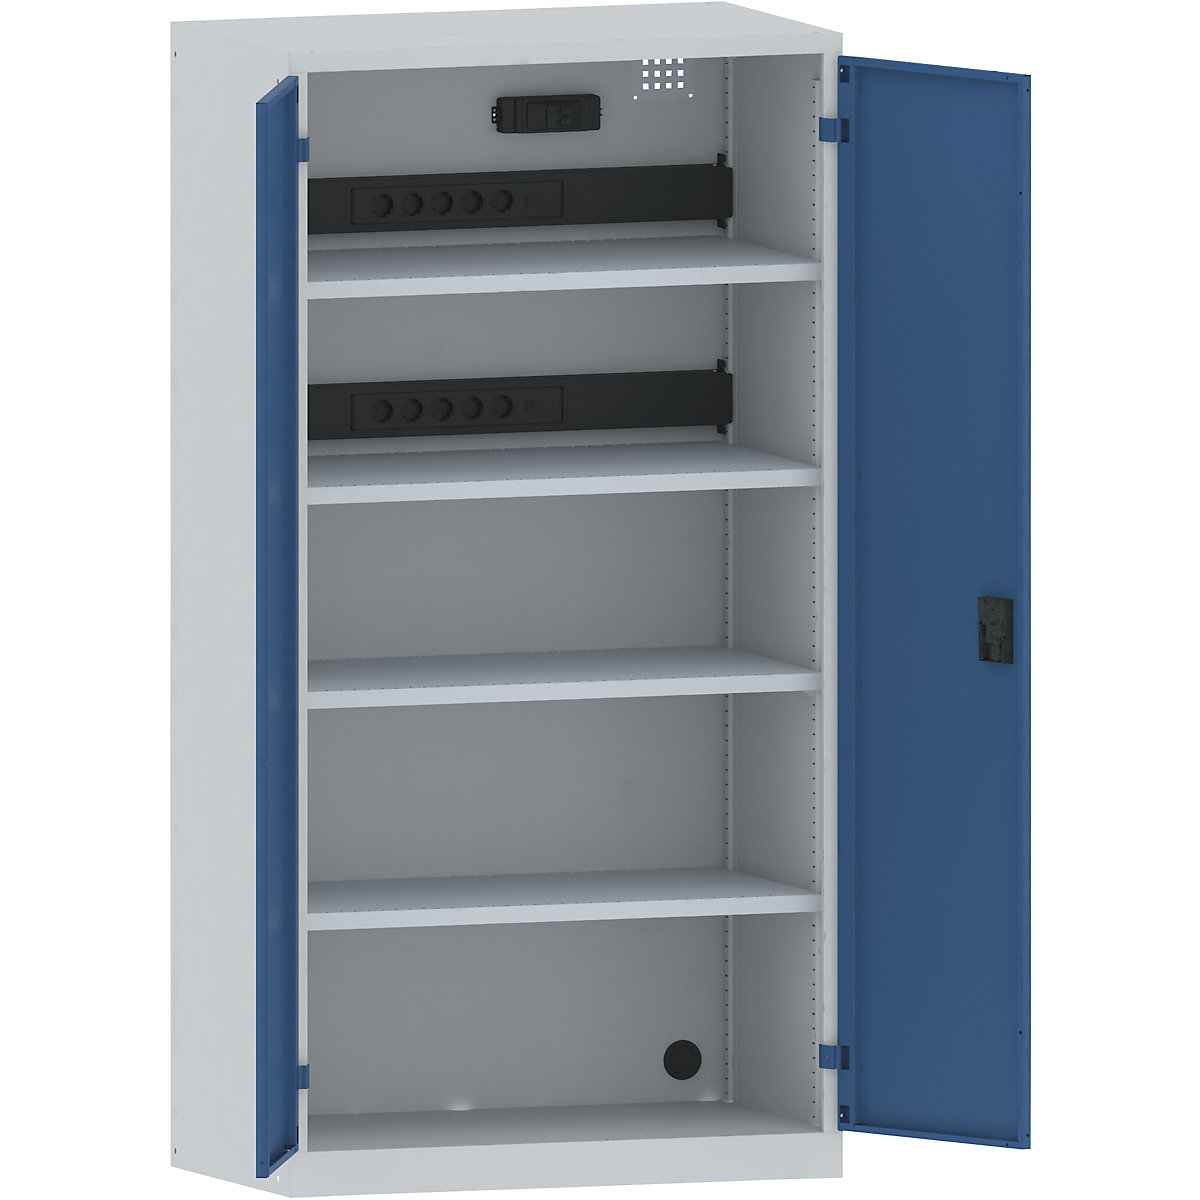 LISTA – Armario cargador de baterías, 4 baldas, puertas de chapa maciza, 2 regletas de enchufes detrás con interruptor FI/LS, gris / azul